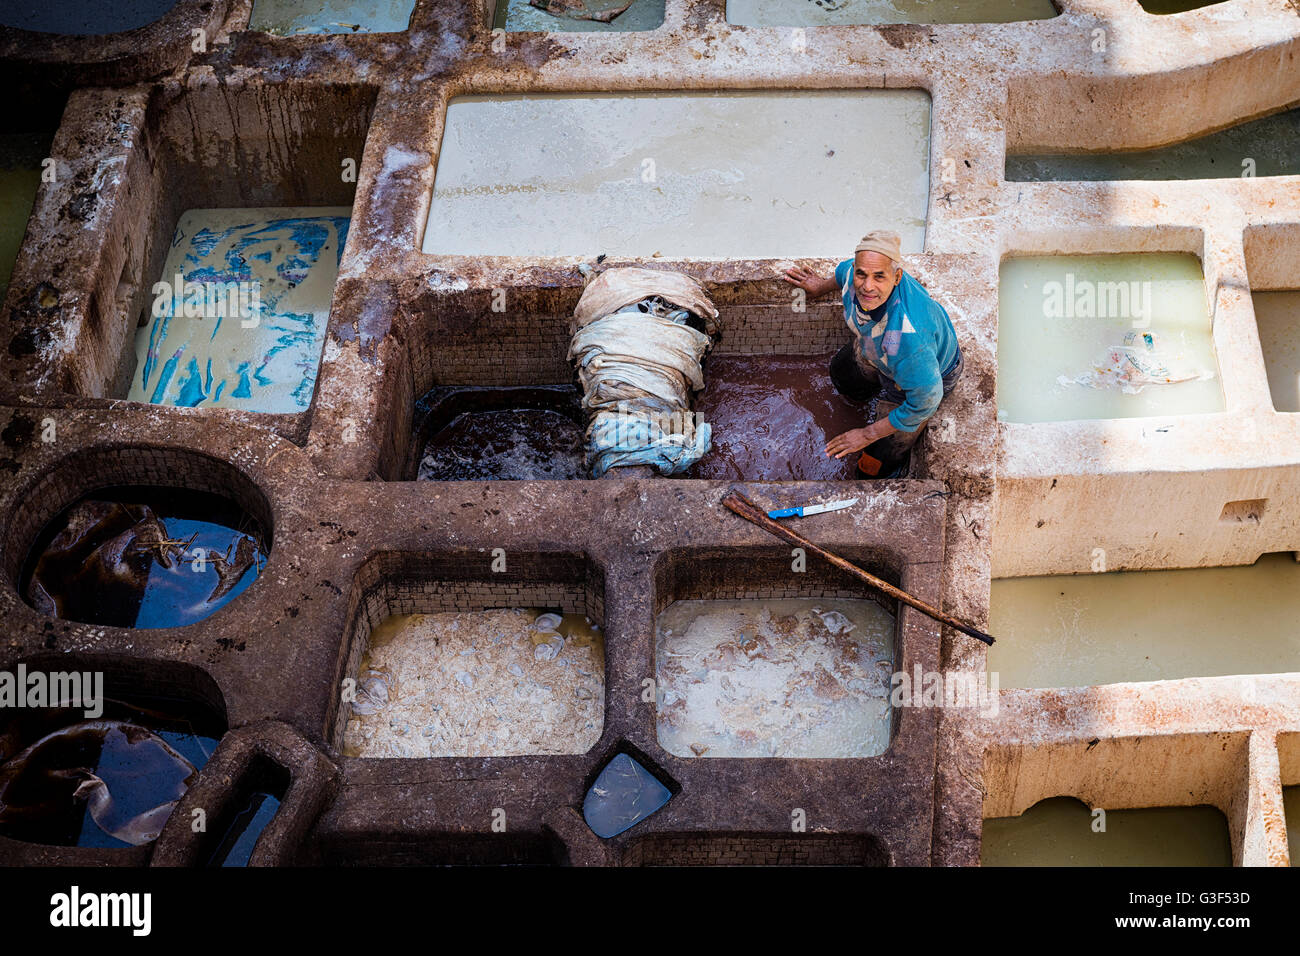 Fes, Maroc - 11 Avril 2016 : un homme travaillant dans une tannerie dans la ville de Fès au Maroc. Banque D'Images